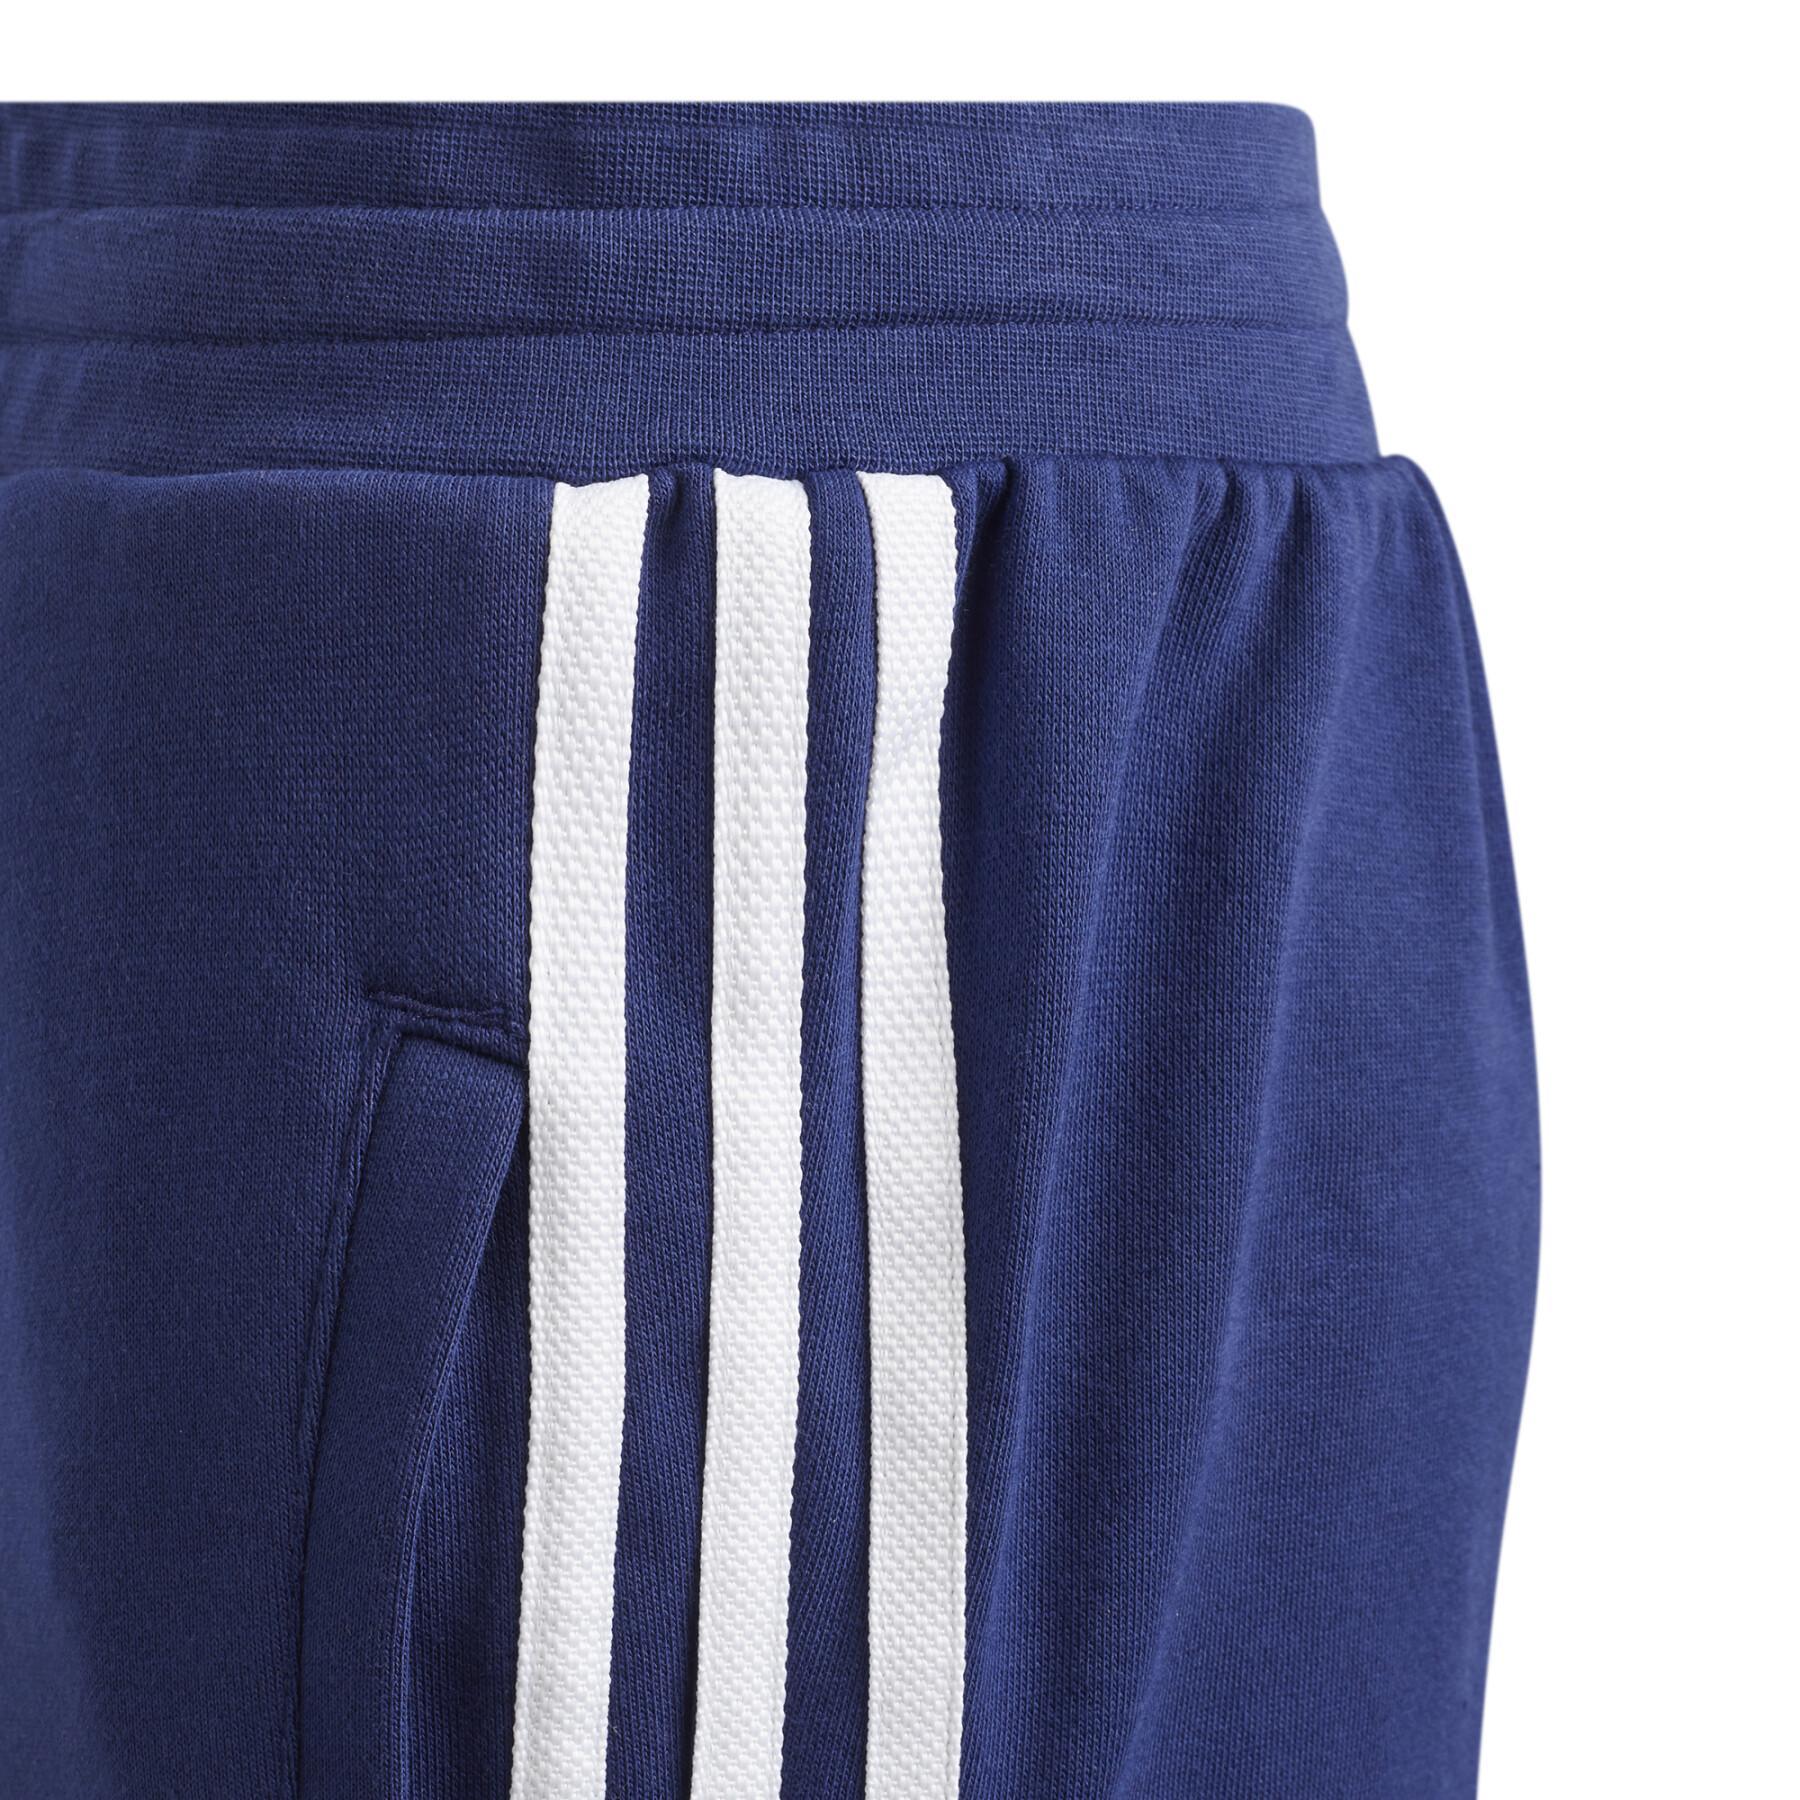 Pantalon de survêtement enfant adidas Originals 3-Stripes